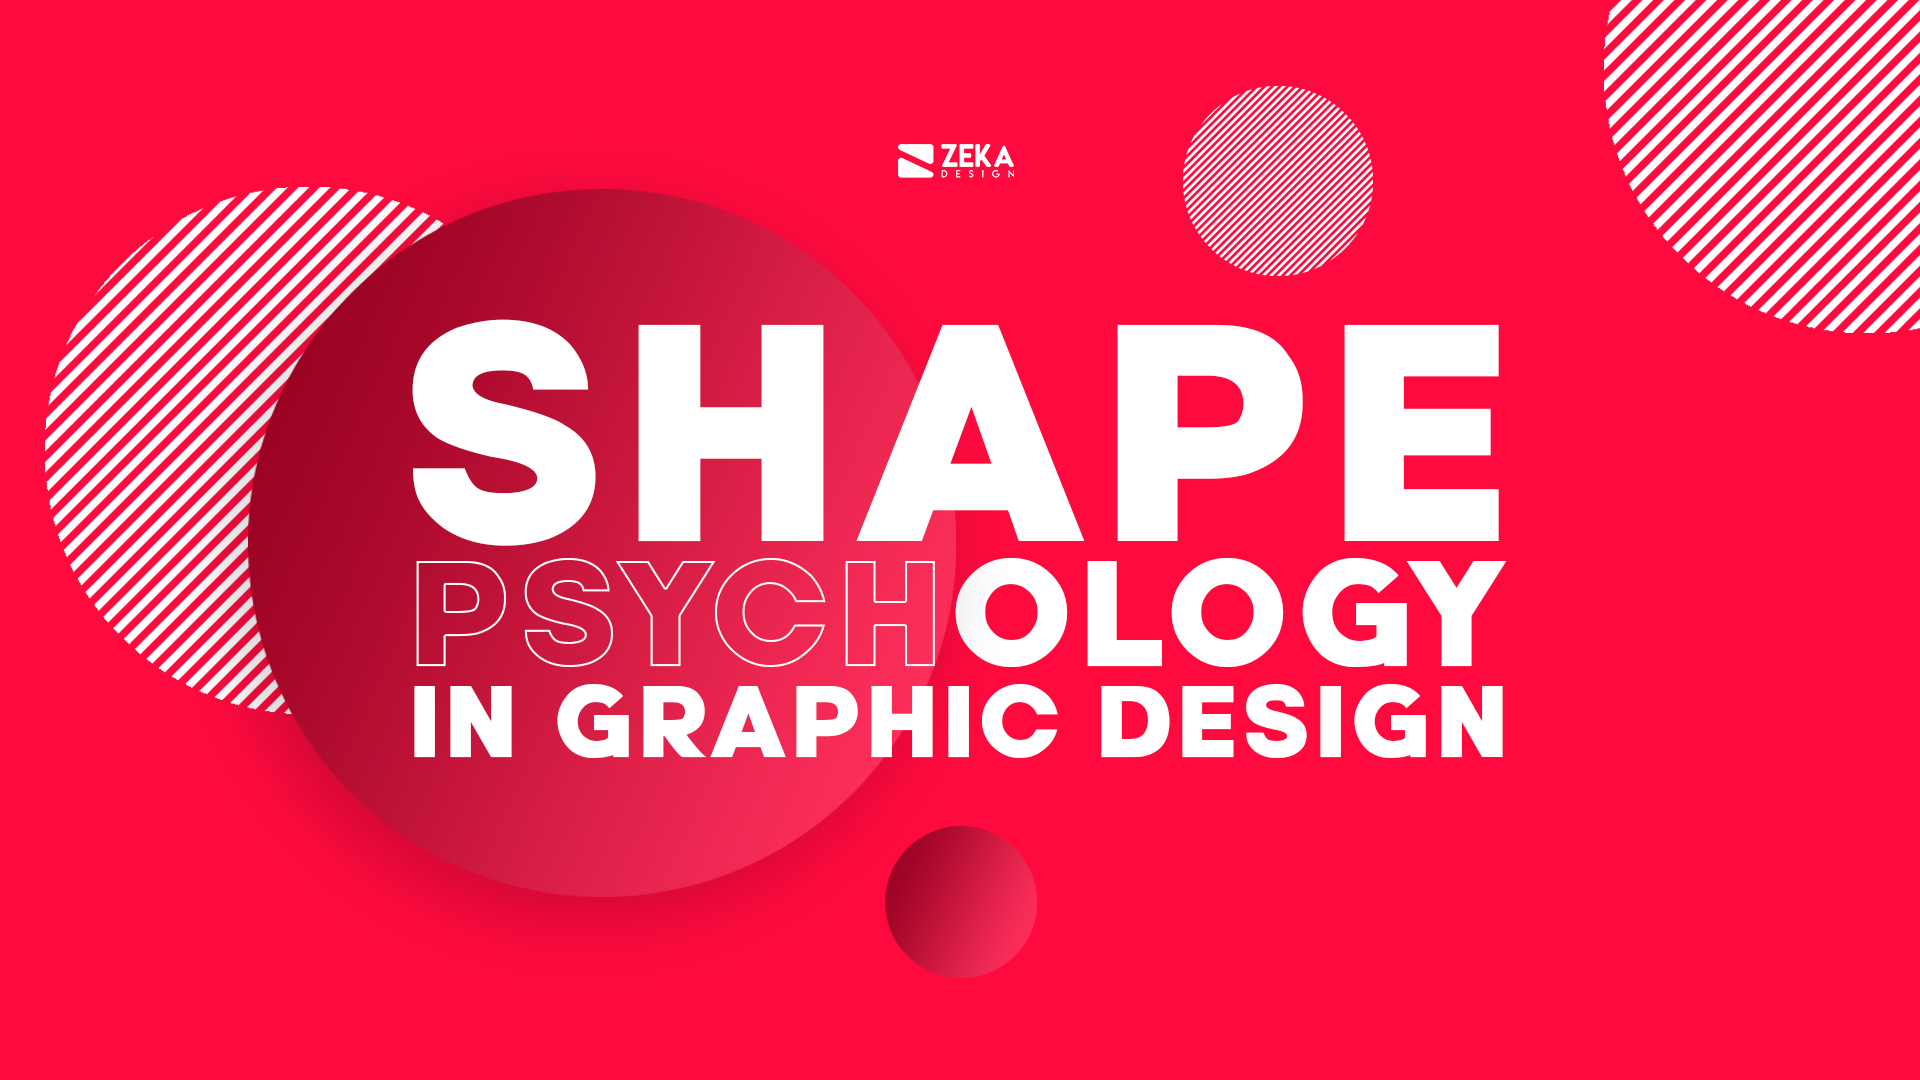 shape-psychology-in-graphic-design-zeka-design